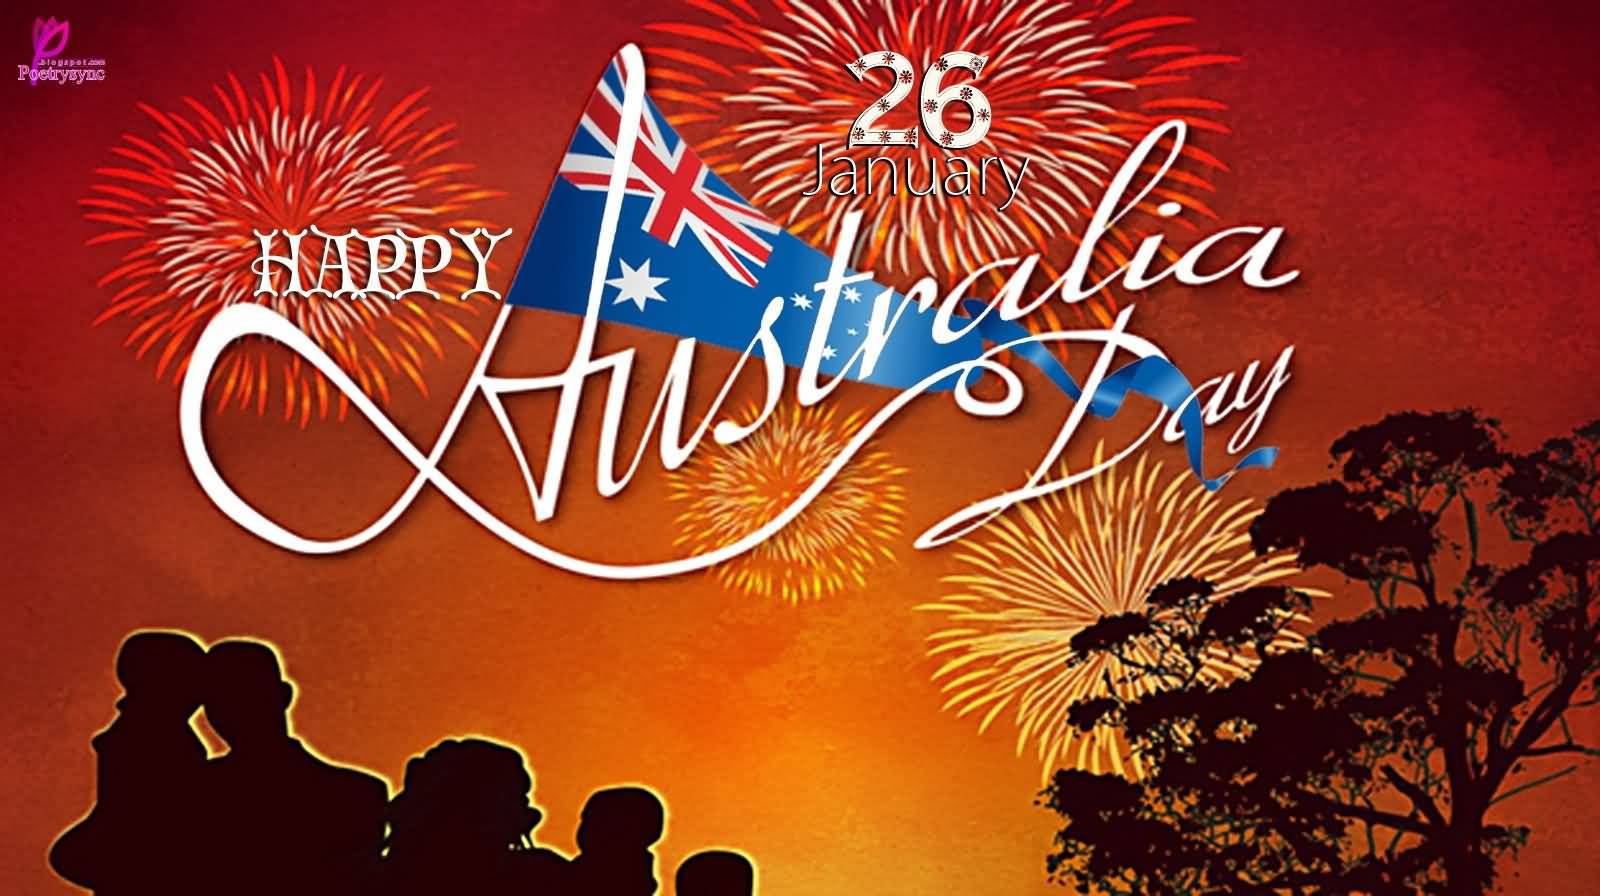 26 January Happy Australia Day